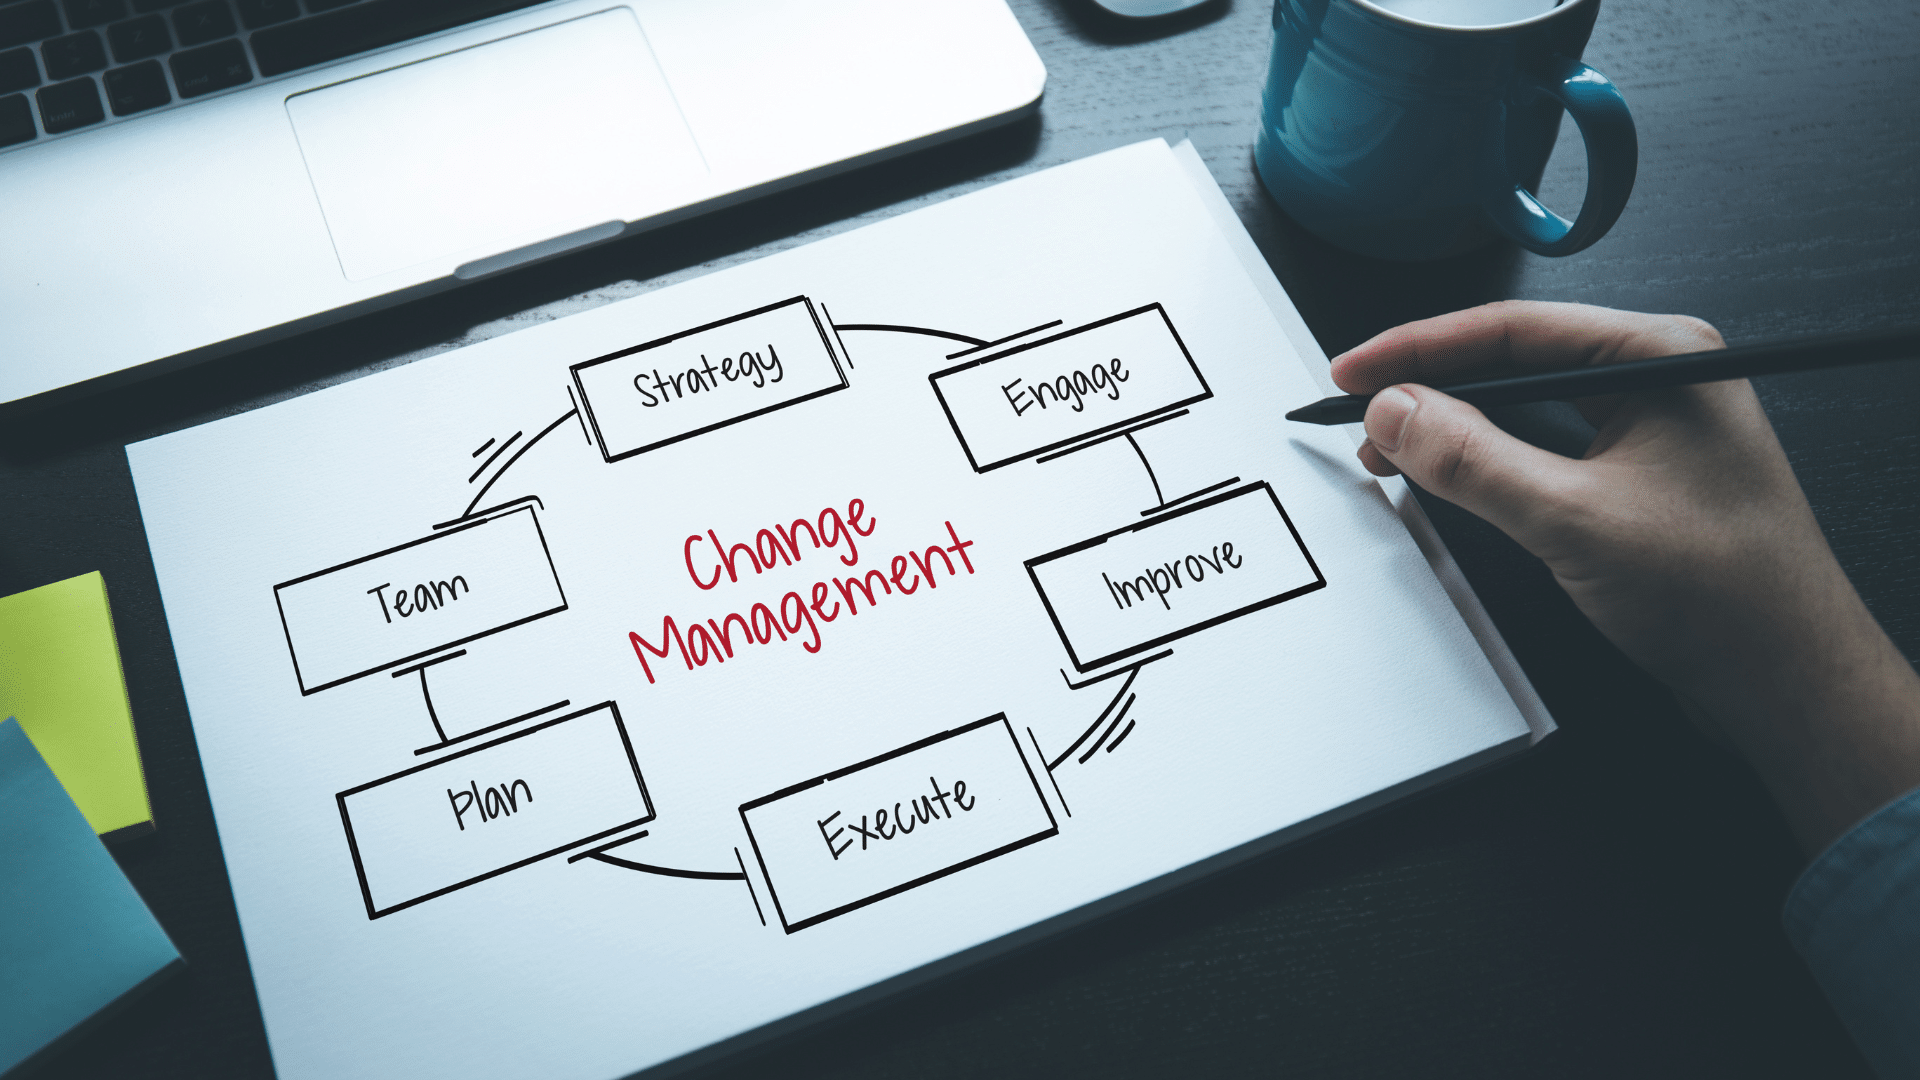 change management process